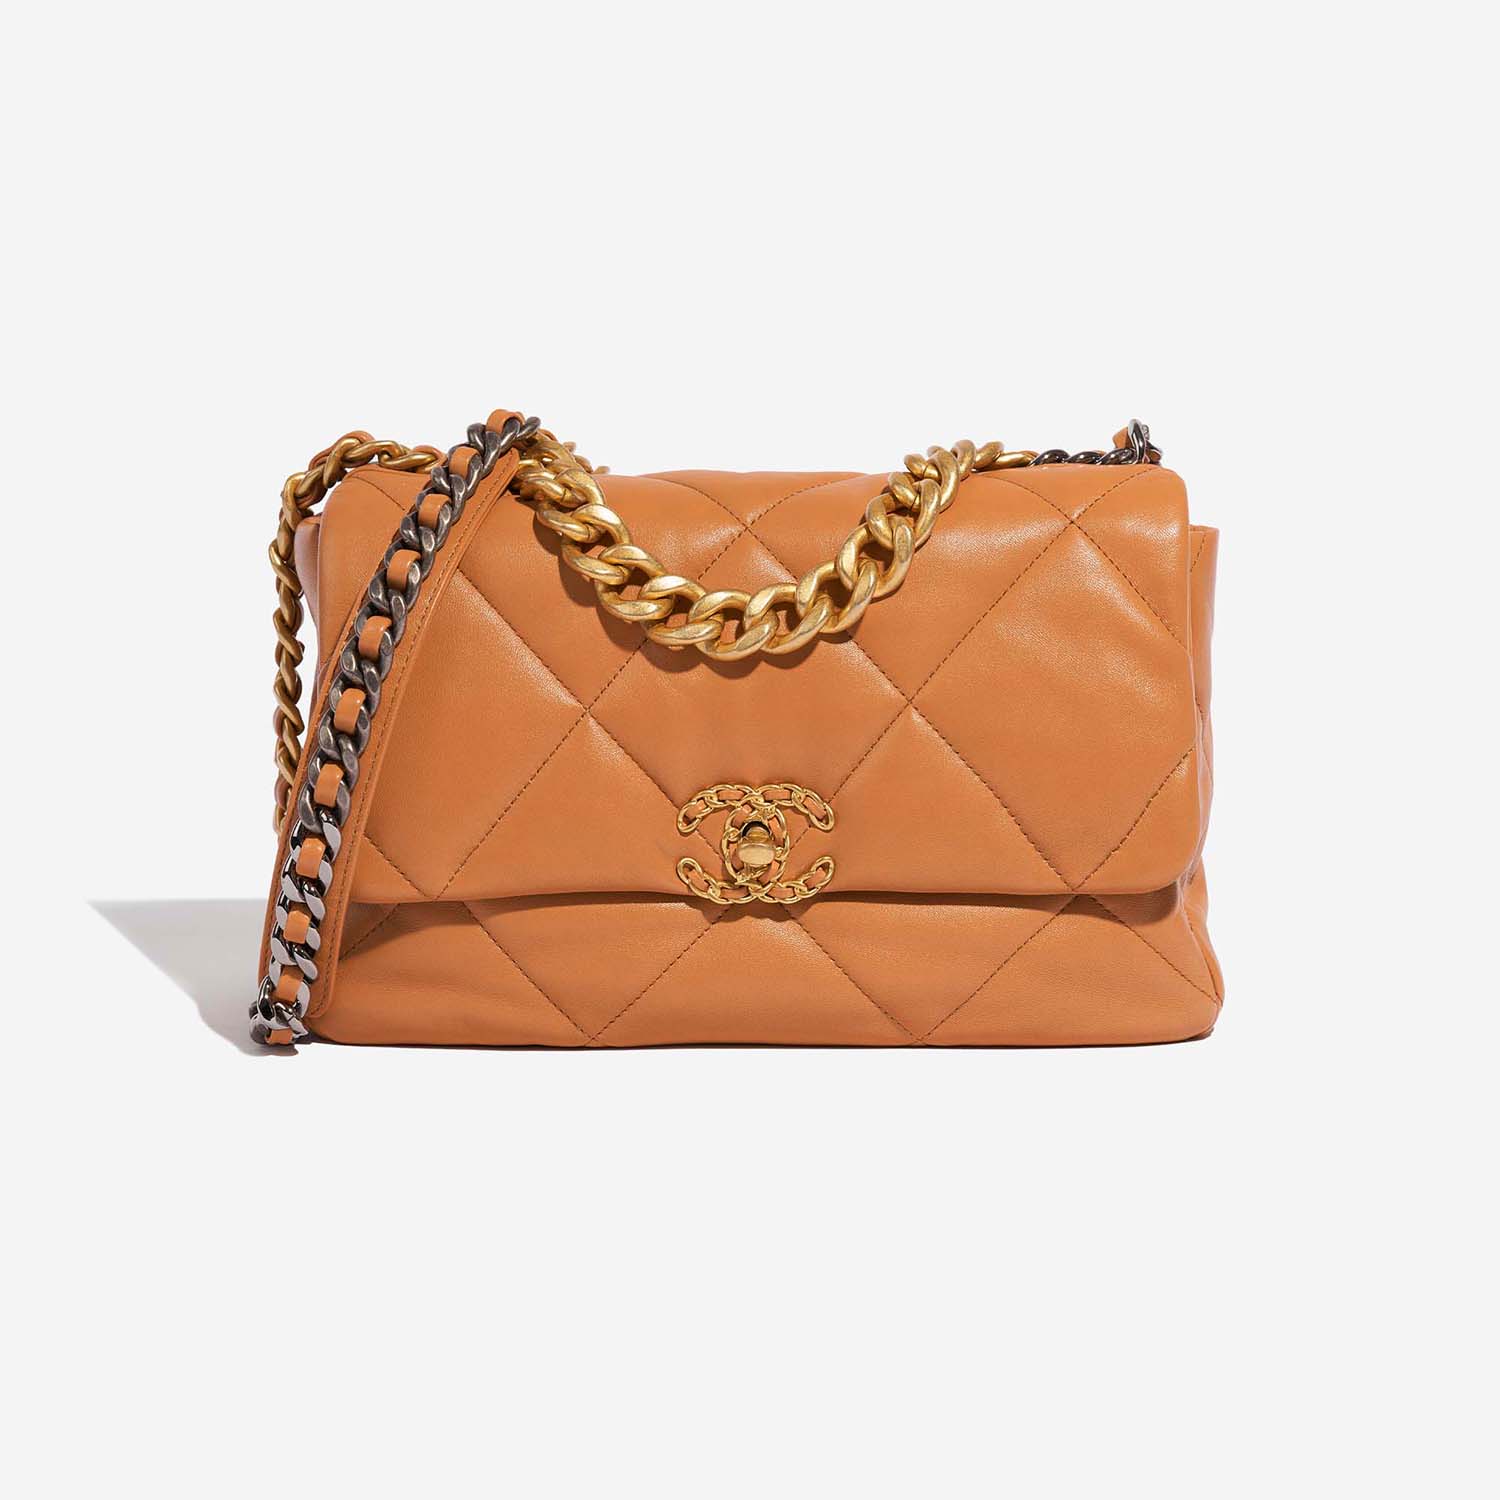 Chanel 19 Large Flap Bag Cognac Front | Verkaufen Sie Ihre Designer-Tasche auf Saclab.com